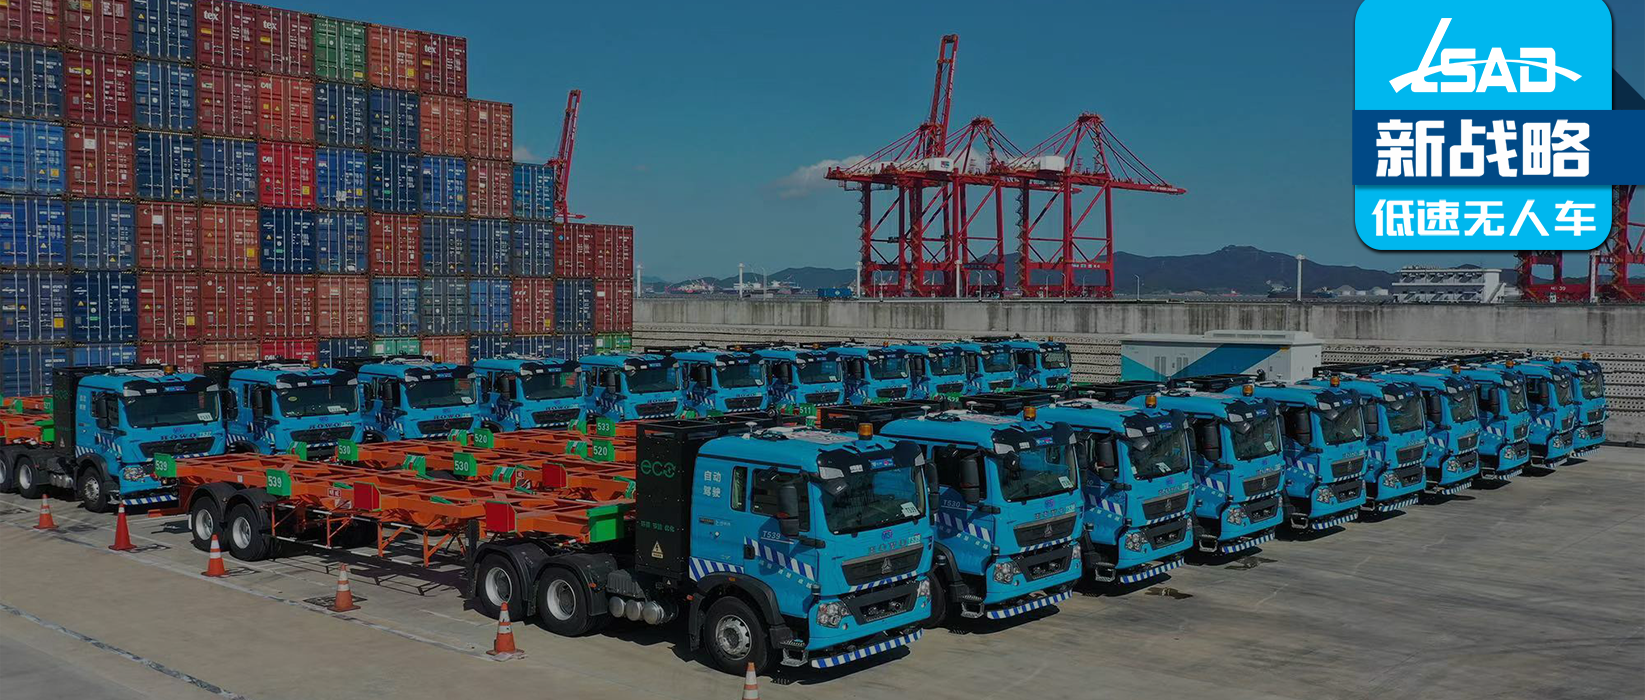 无人集卡车队规模将突破60台-飞步科技与梅东码头再次达成合作